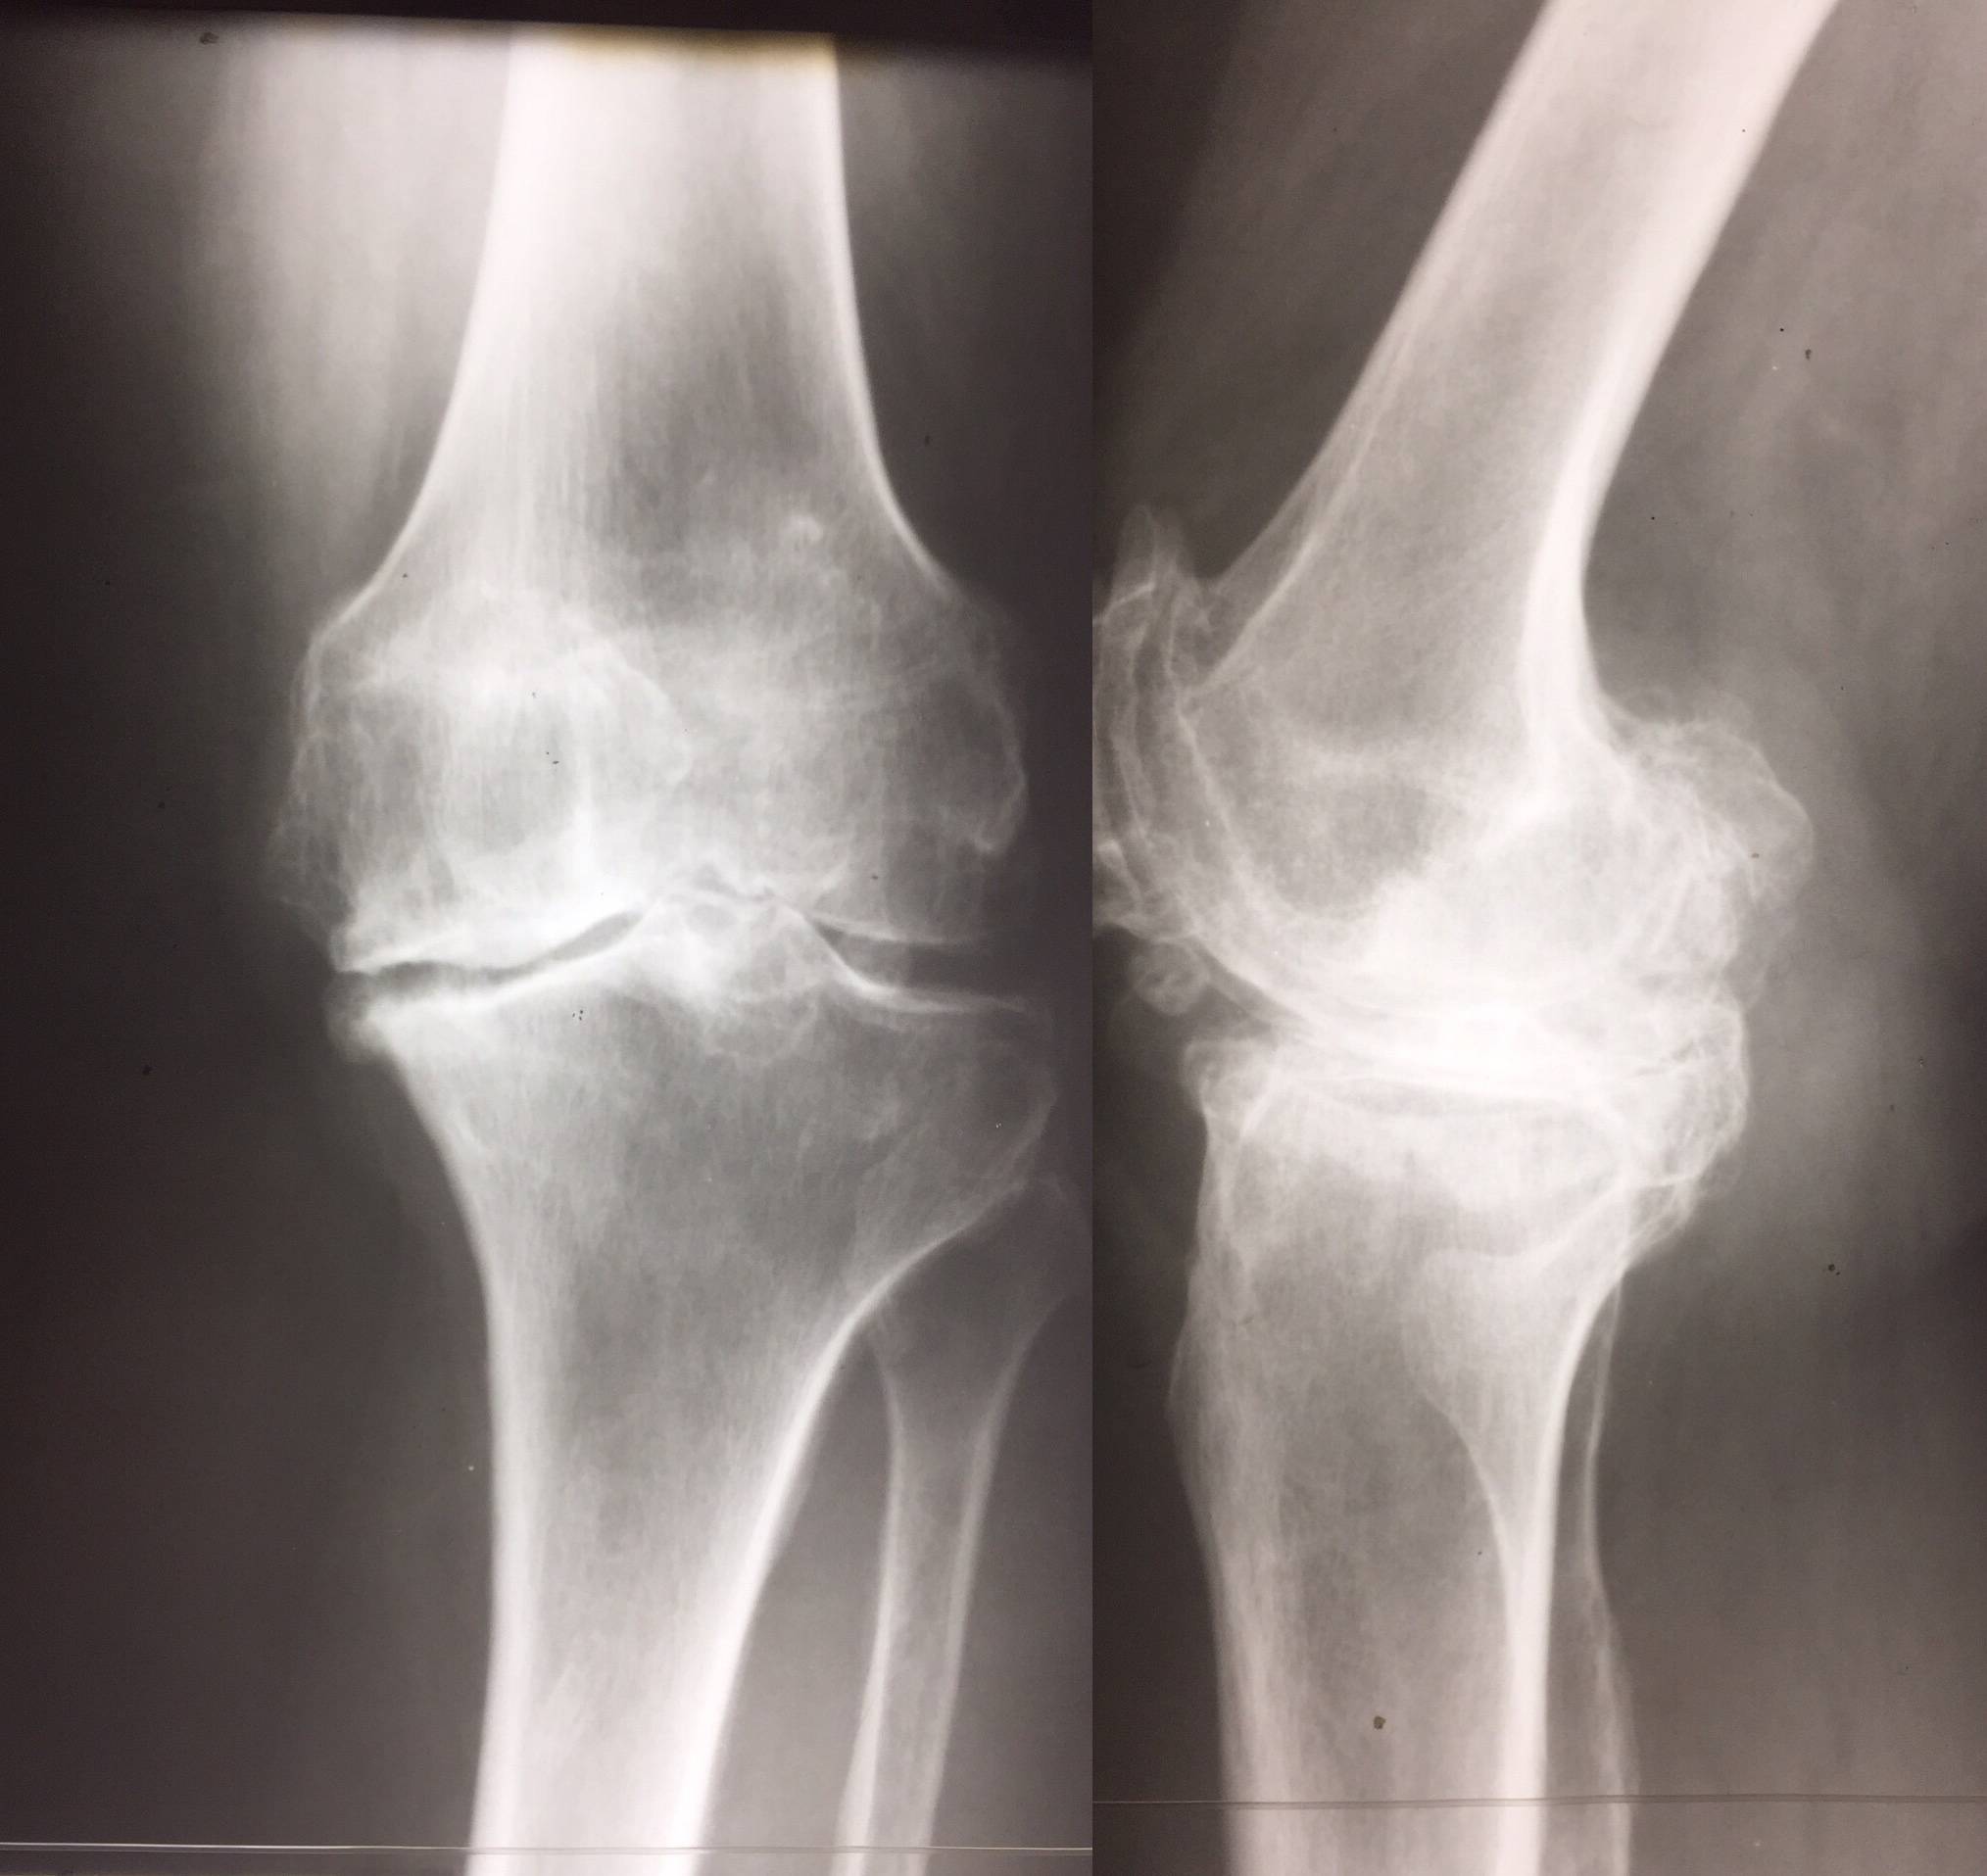 Остеоартроз это. Доа коленного сустава на рентгене. Гонартроз коленного сустава. Гонартроз 2 степени рентген. Гонартроз 2 степени коленного сустава рентген.